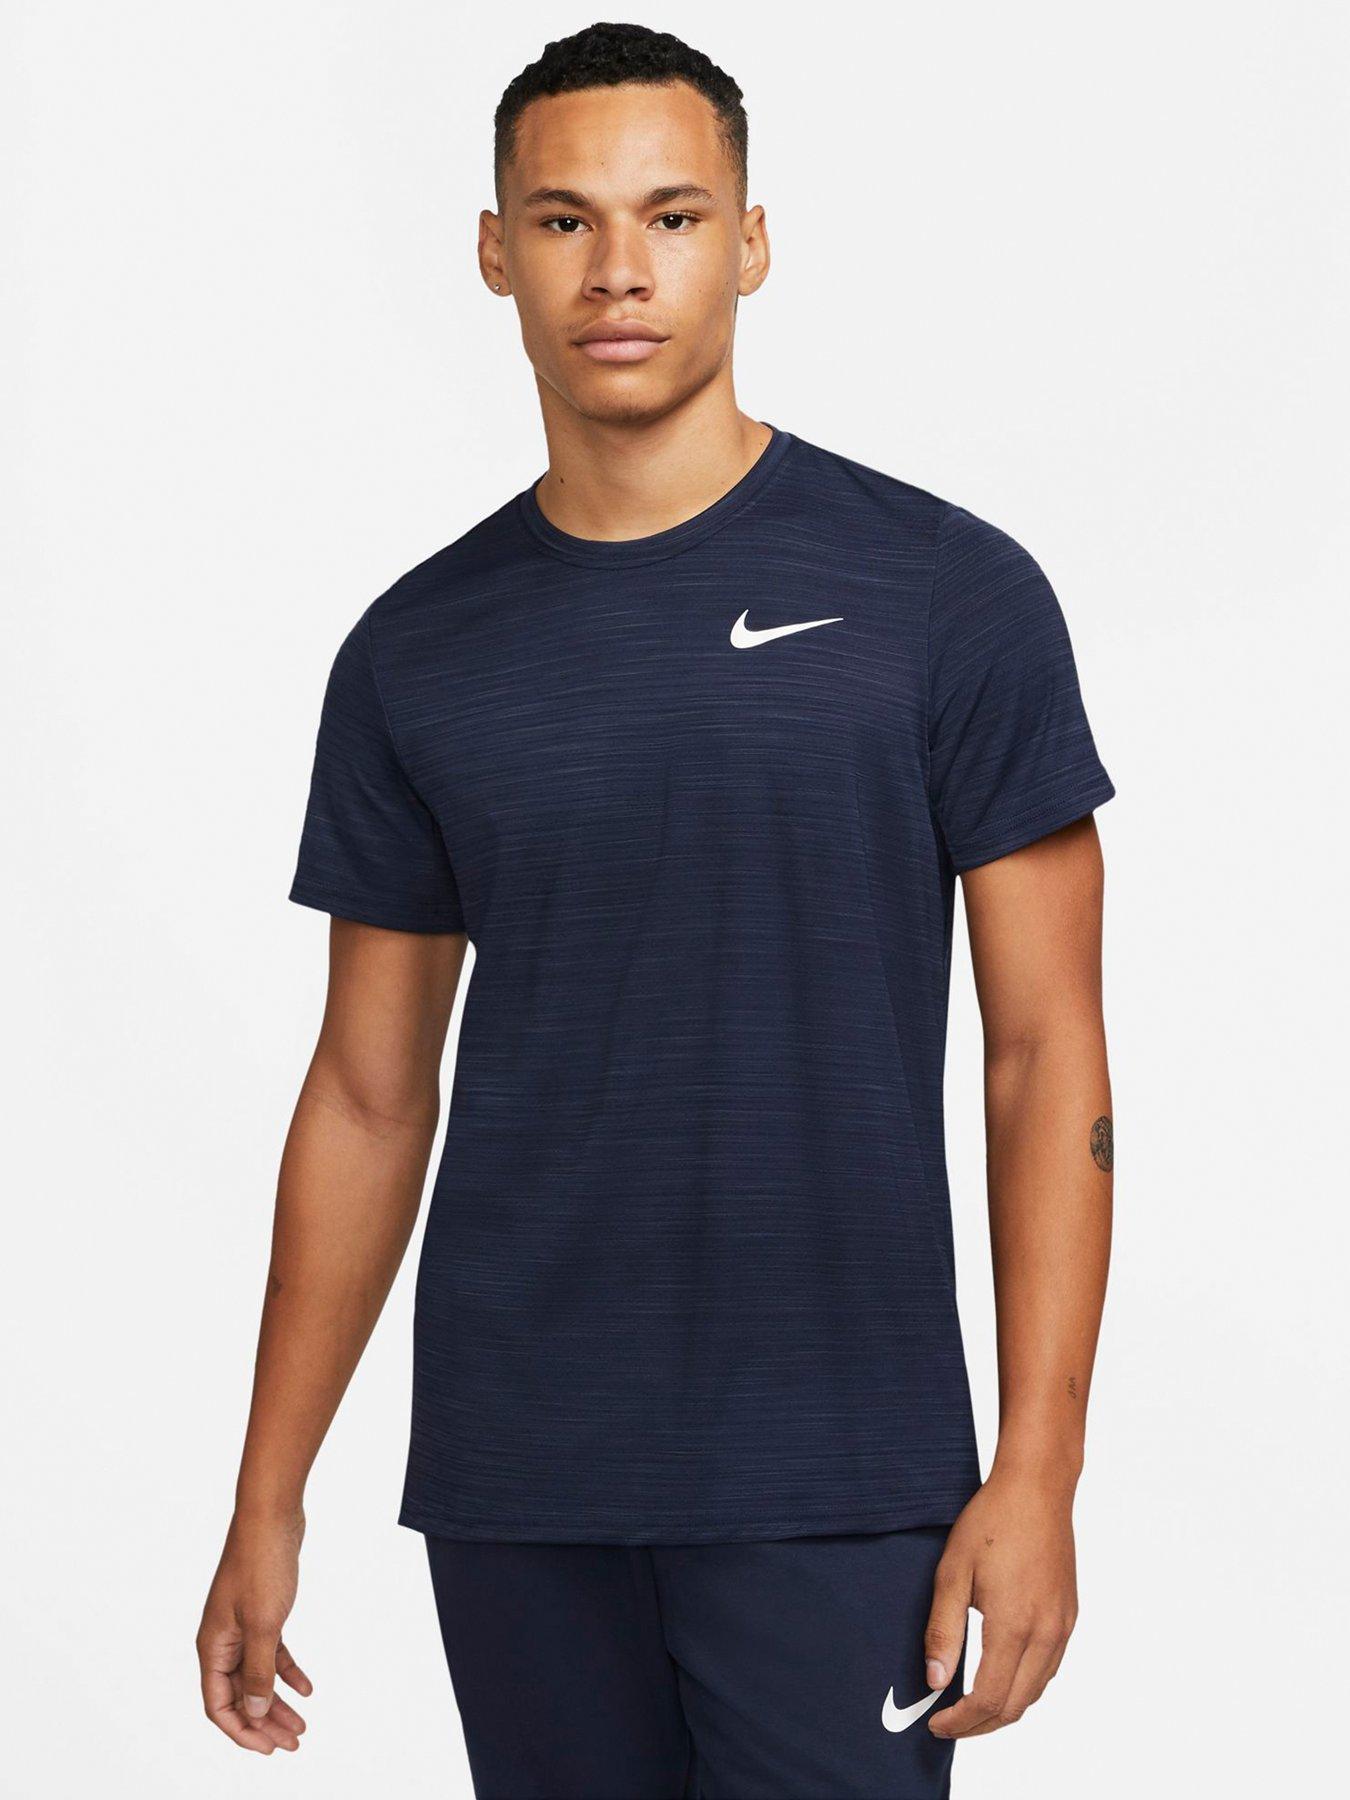 Nike Dri-FIT T-Shirt - Navy | Very